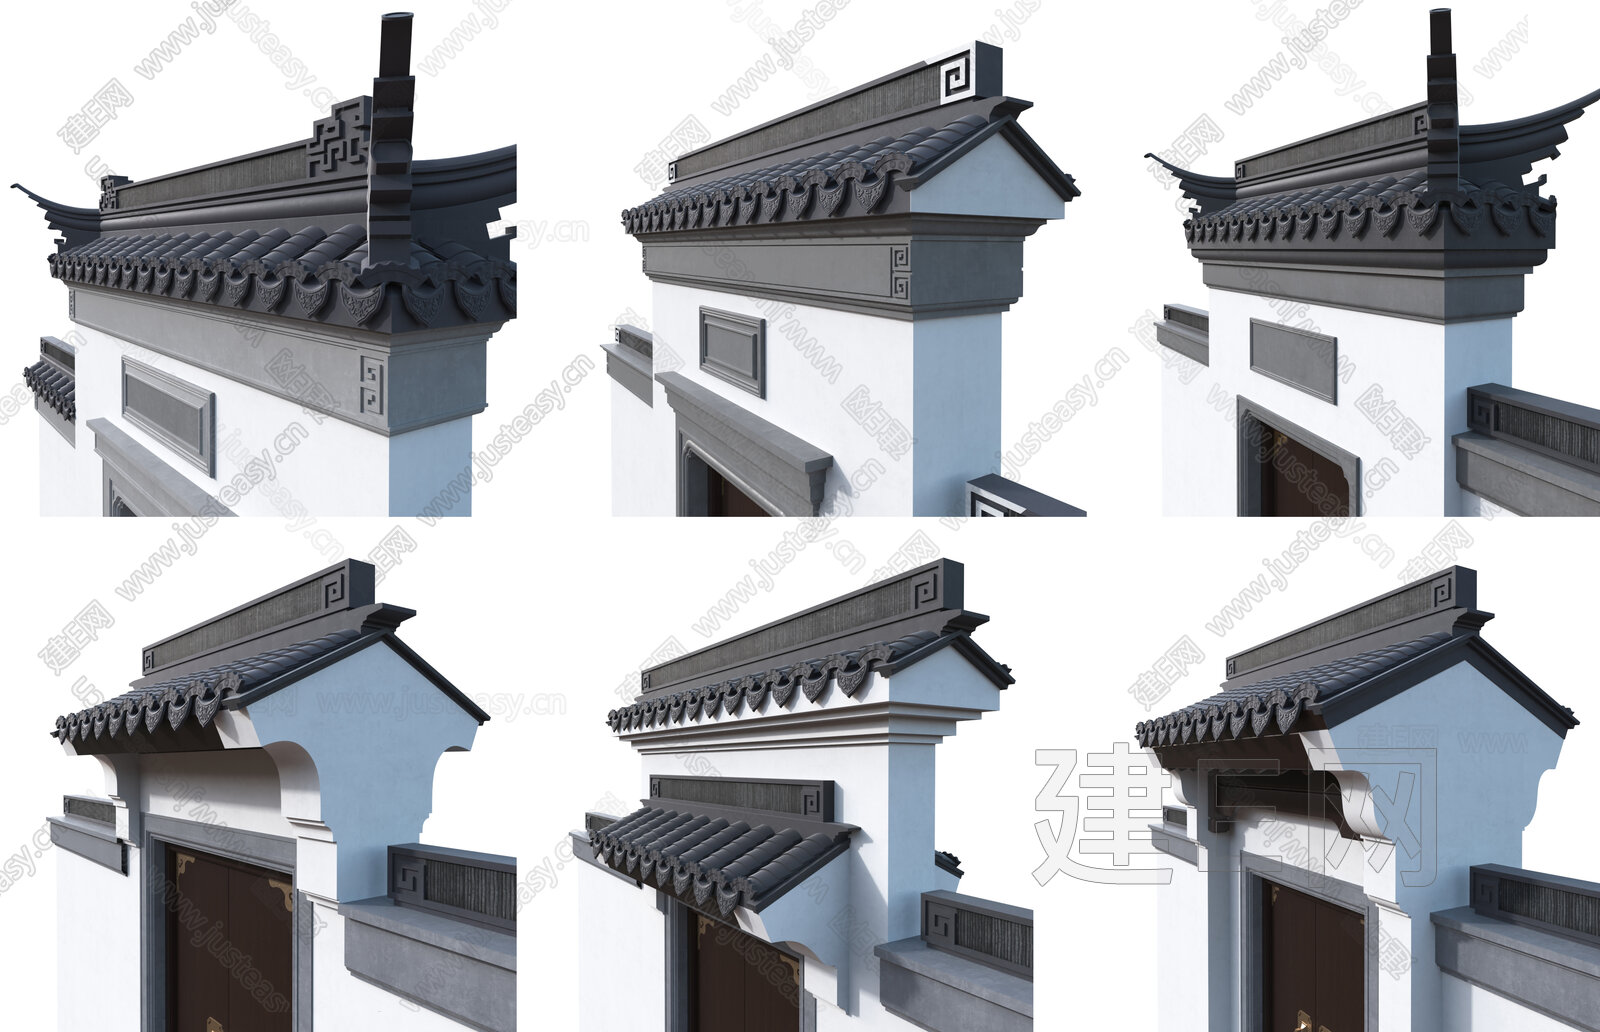 中式徽派建筑门面 店铺门头3d模型下载_ID12208445_3dmax免费模型-欧模网